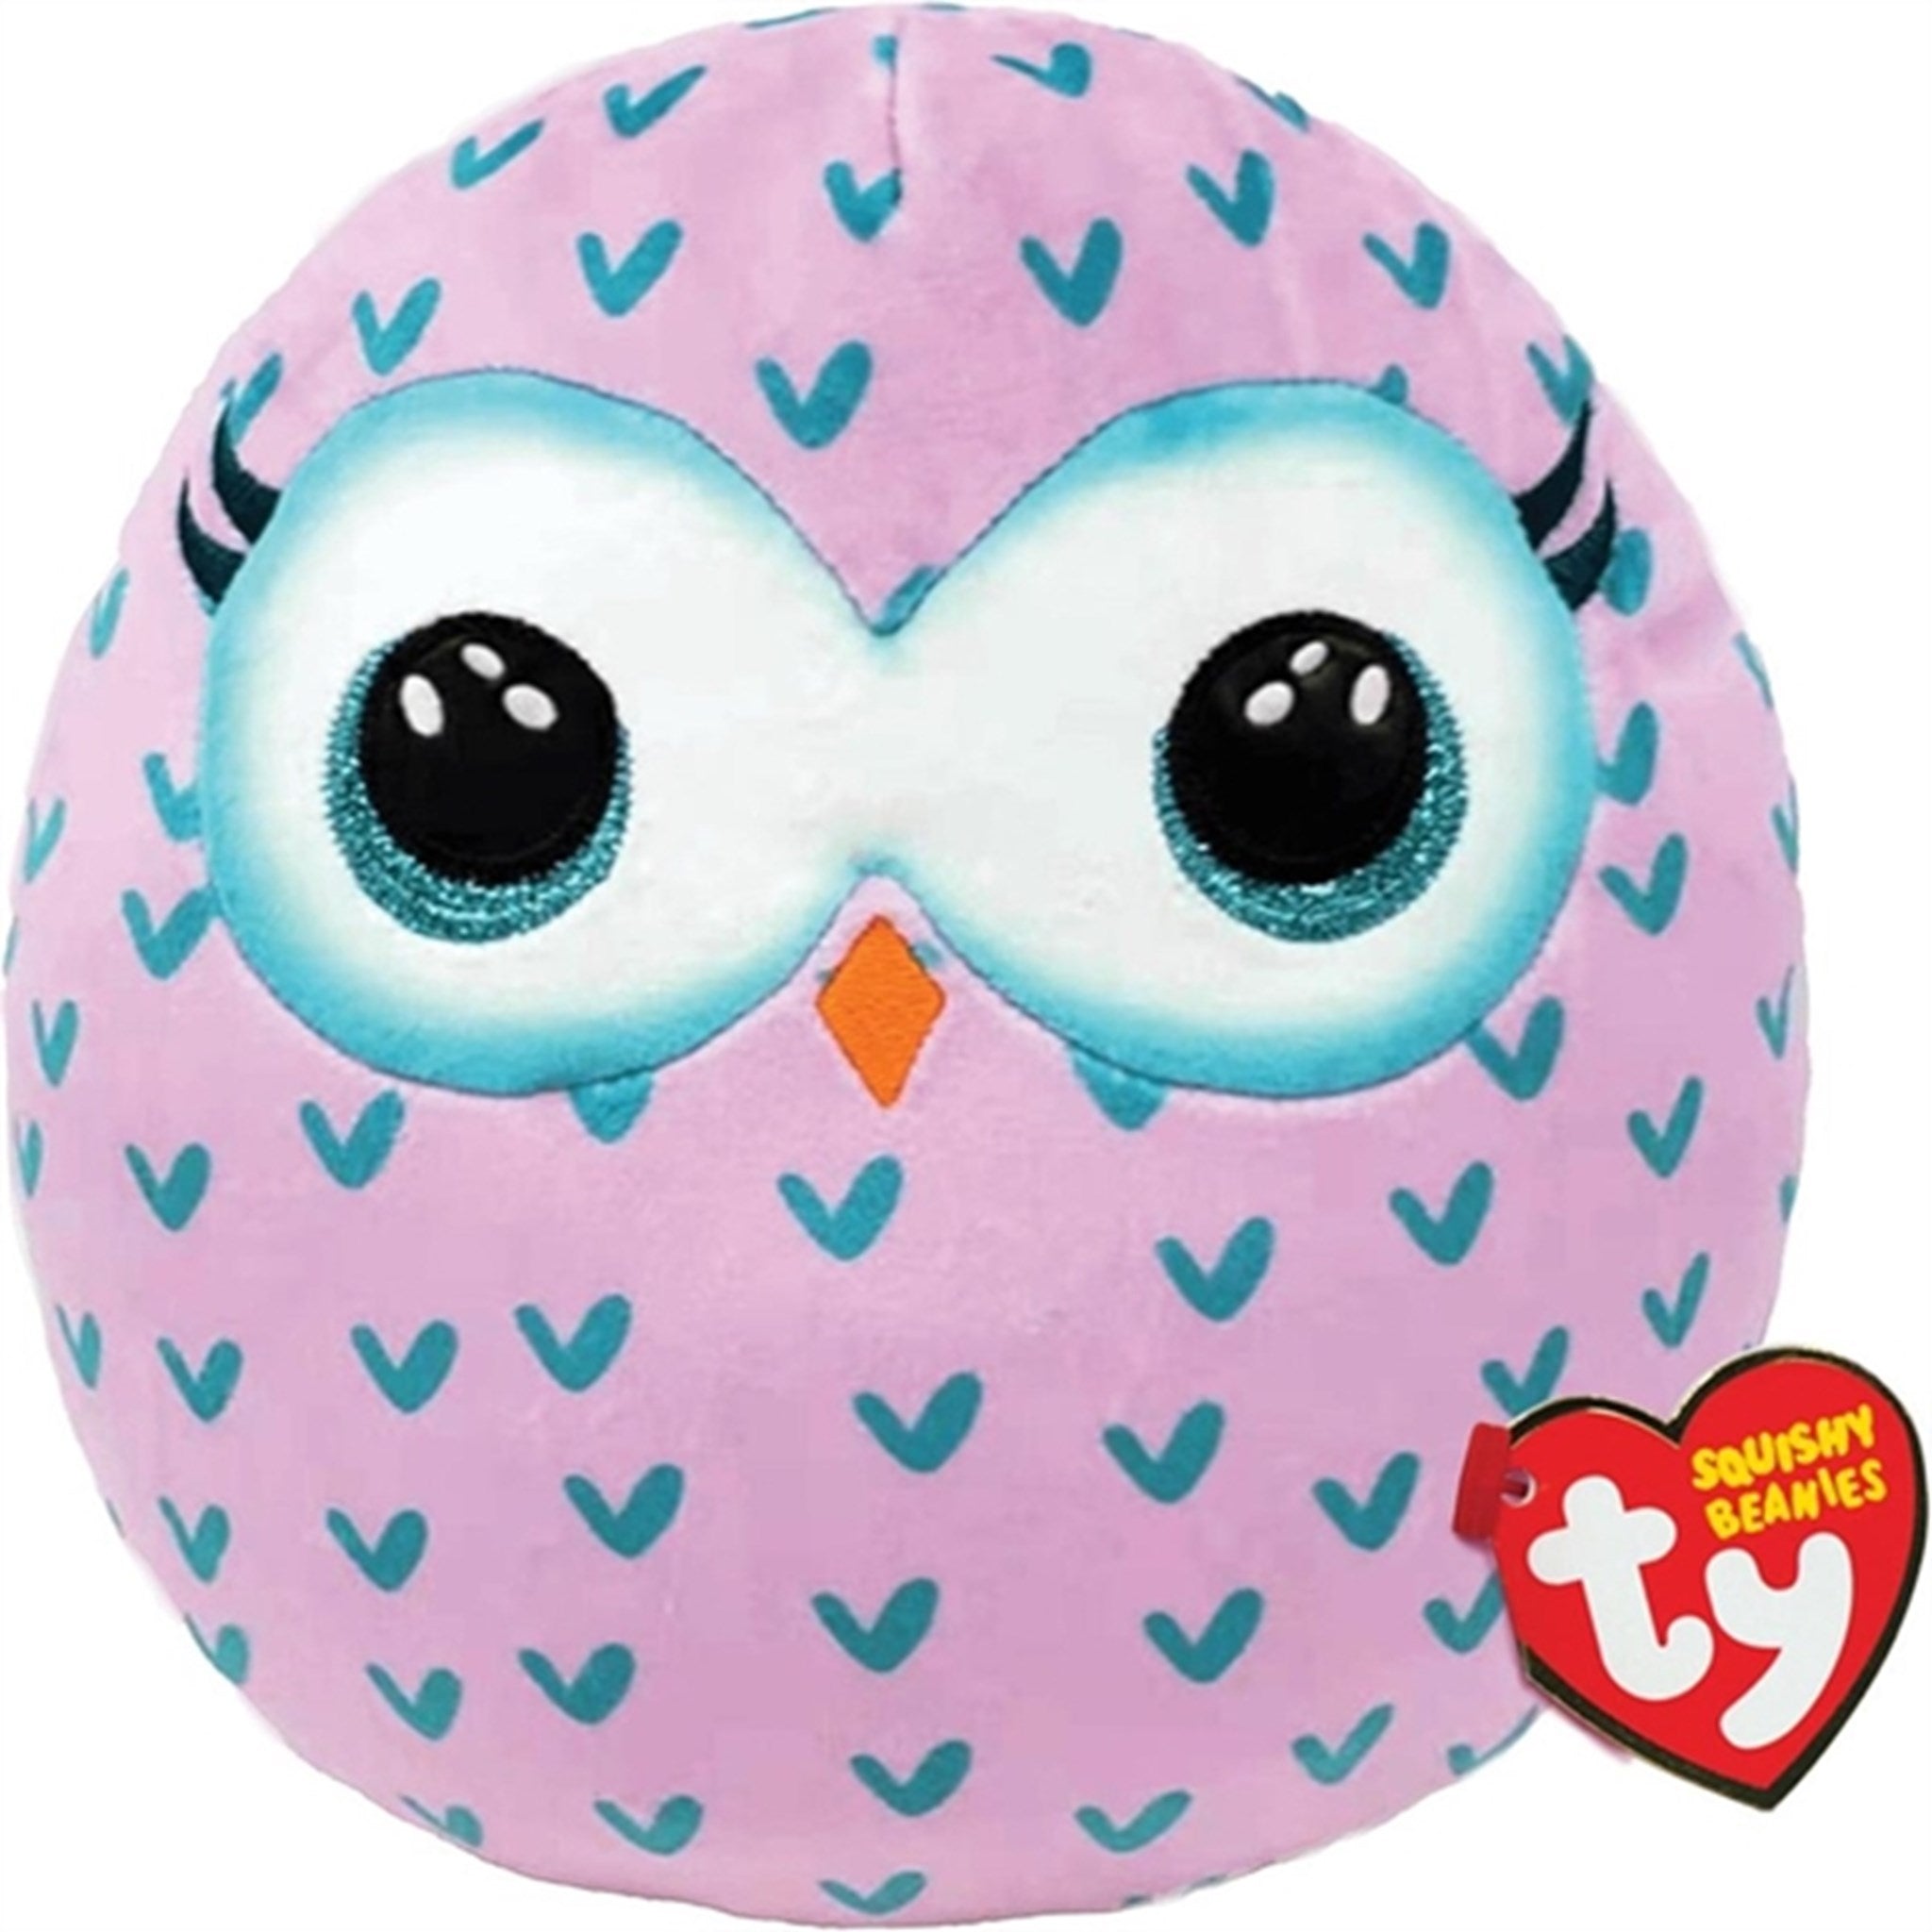 TY Squishy Beanies Winks - Owl Squish 35cm